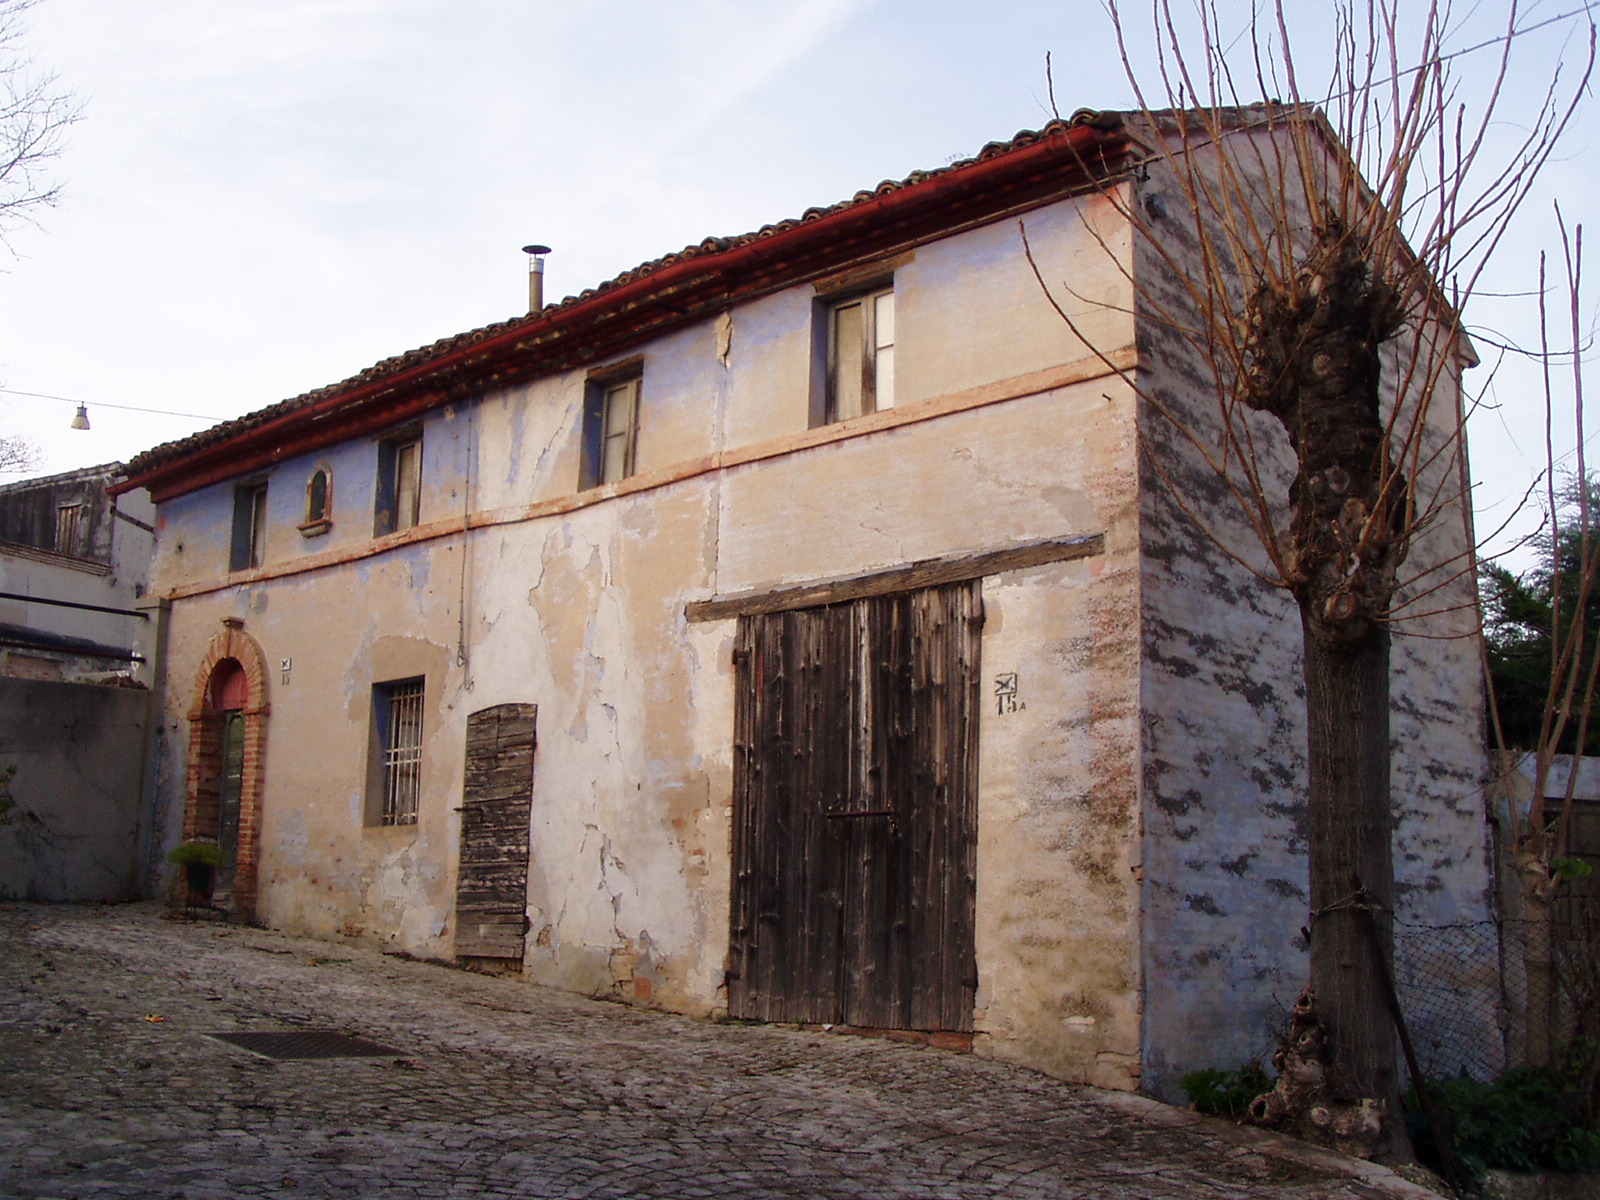 Casa isolata (casa isolata) - Santa Maria Nuova (AN) 